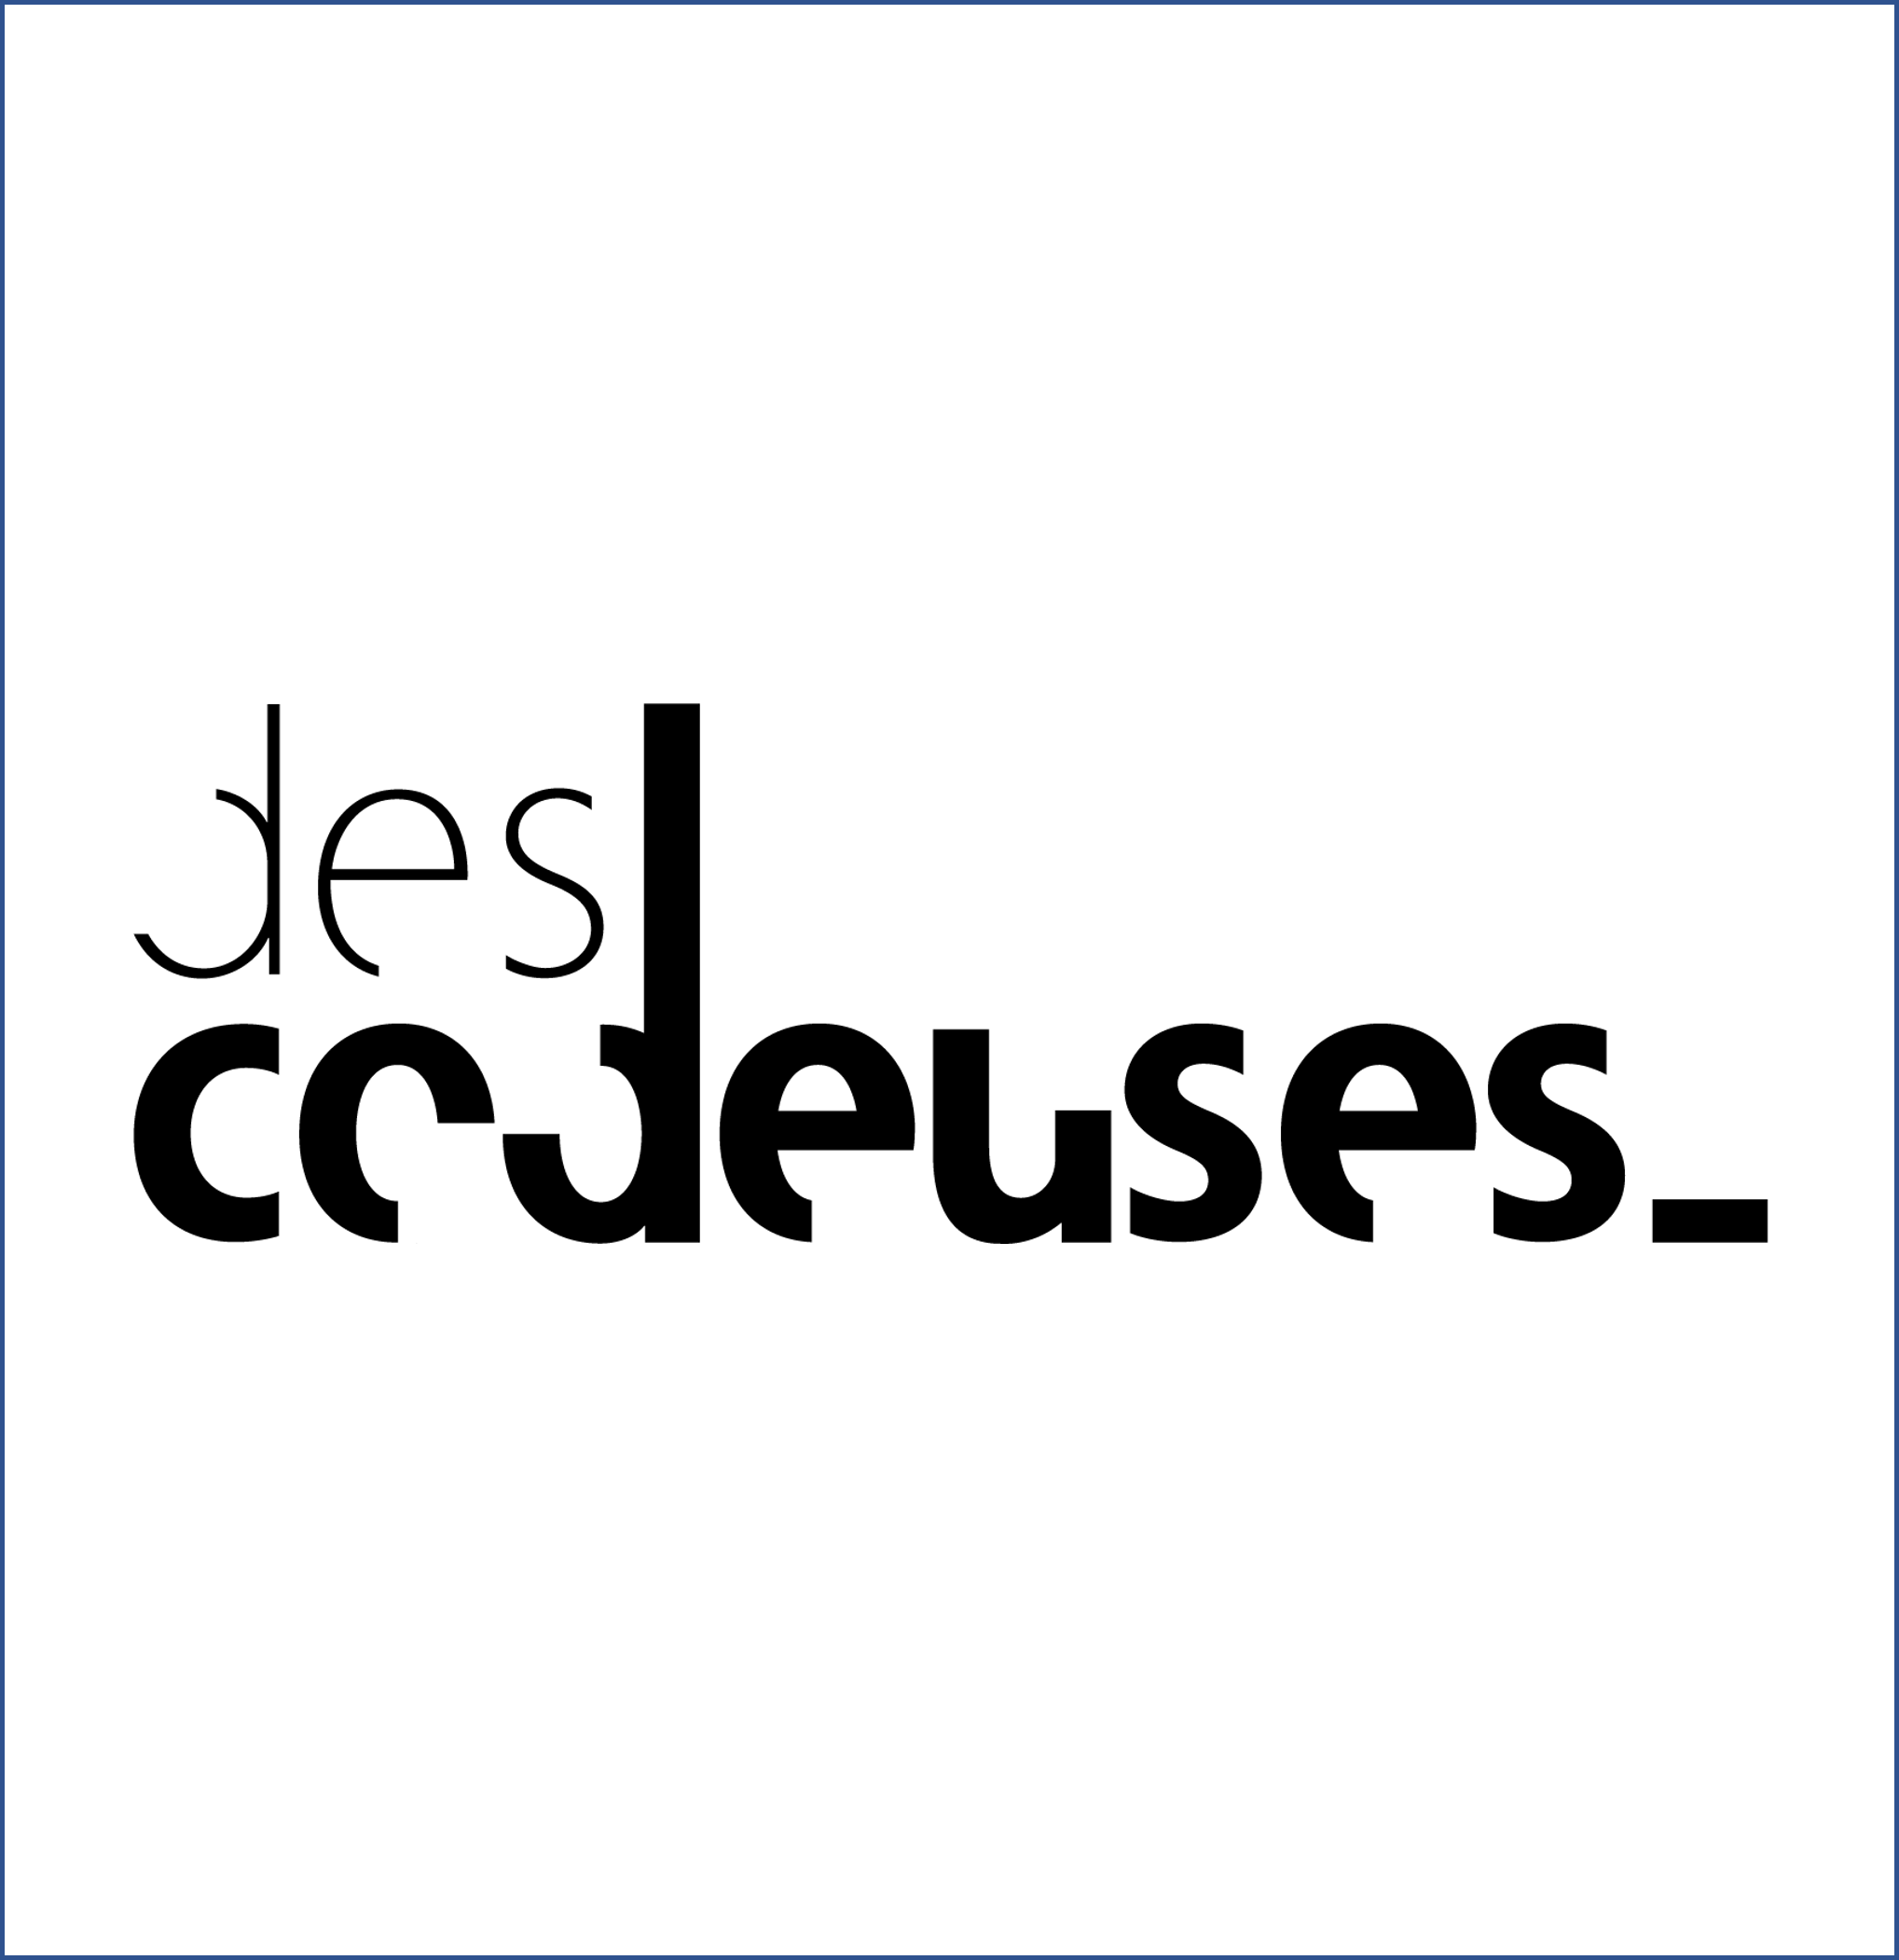 DesCodeuses | Société Générale Fondation